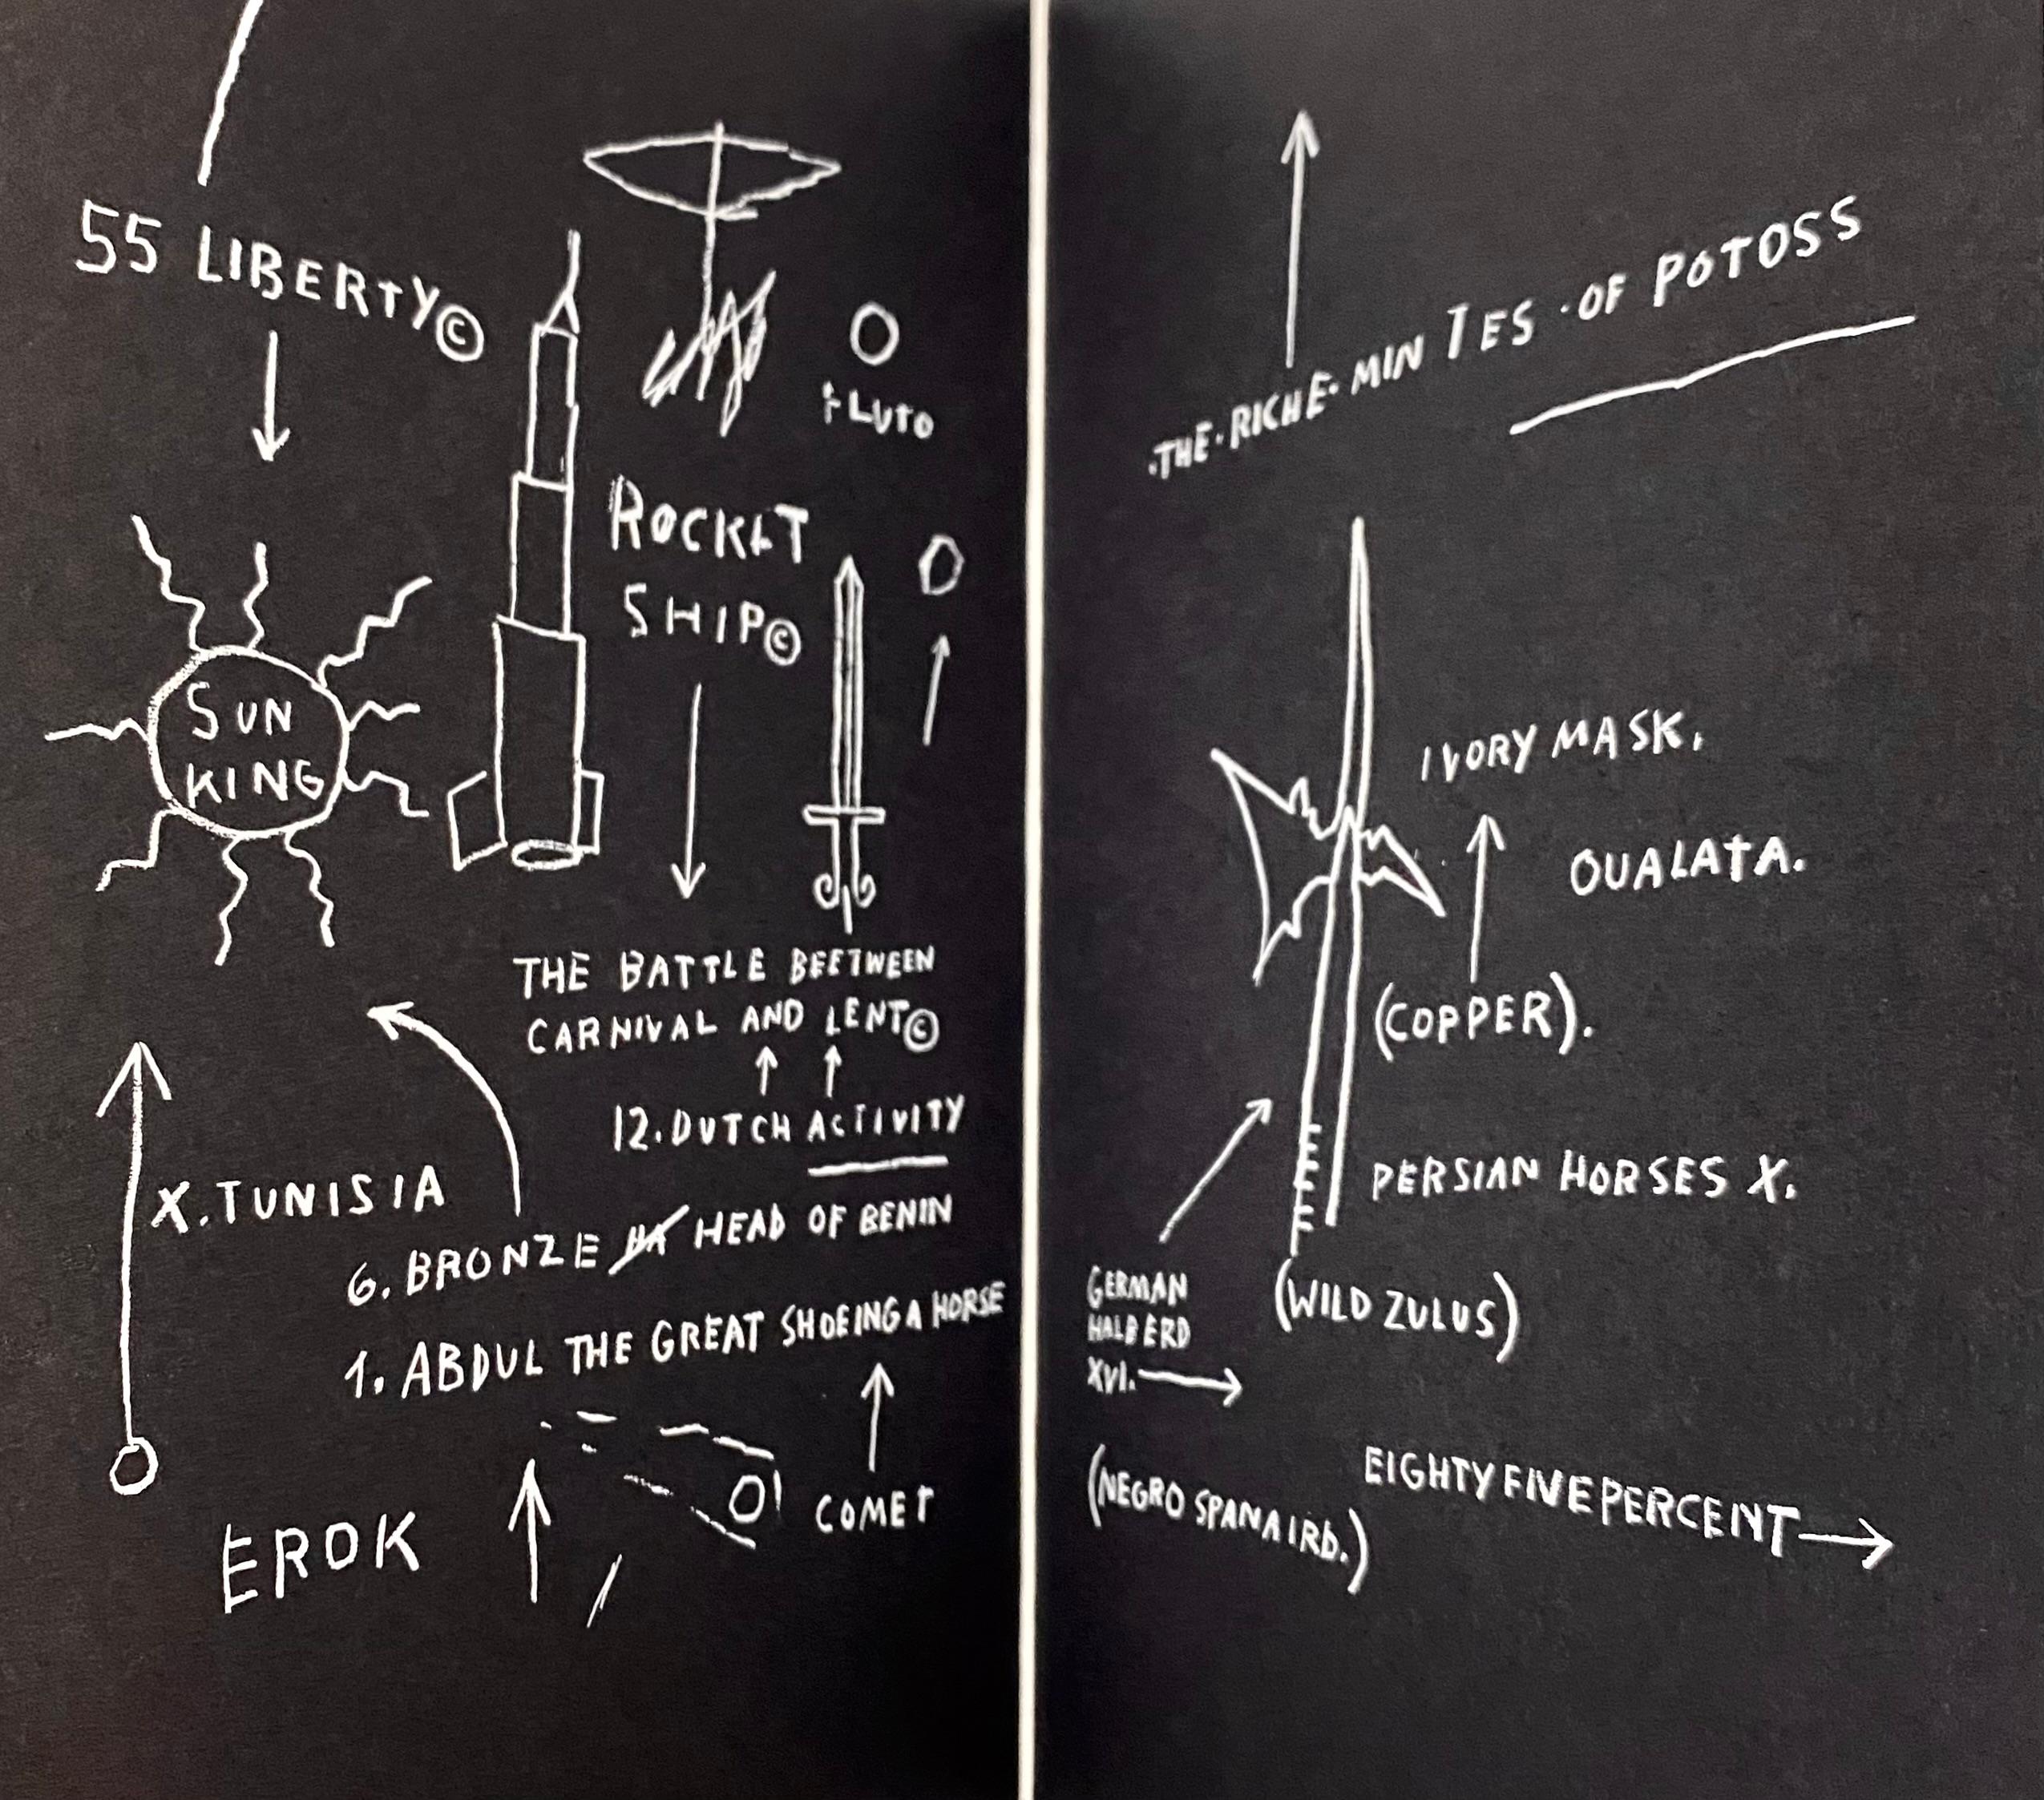 Jean-Michel Basquiat Die Pariser Rundschau:
1982 The Paris Review, mit einer Innenseite von Jean-Michel Basquiats 